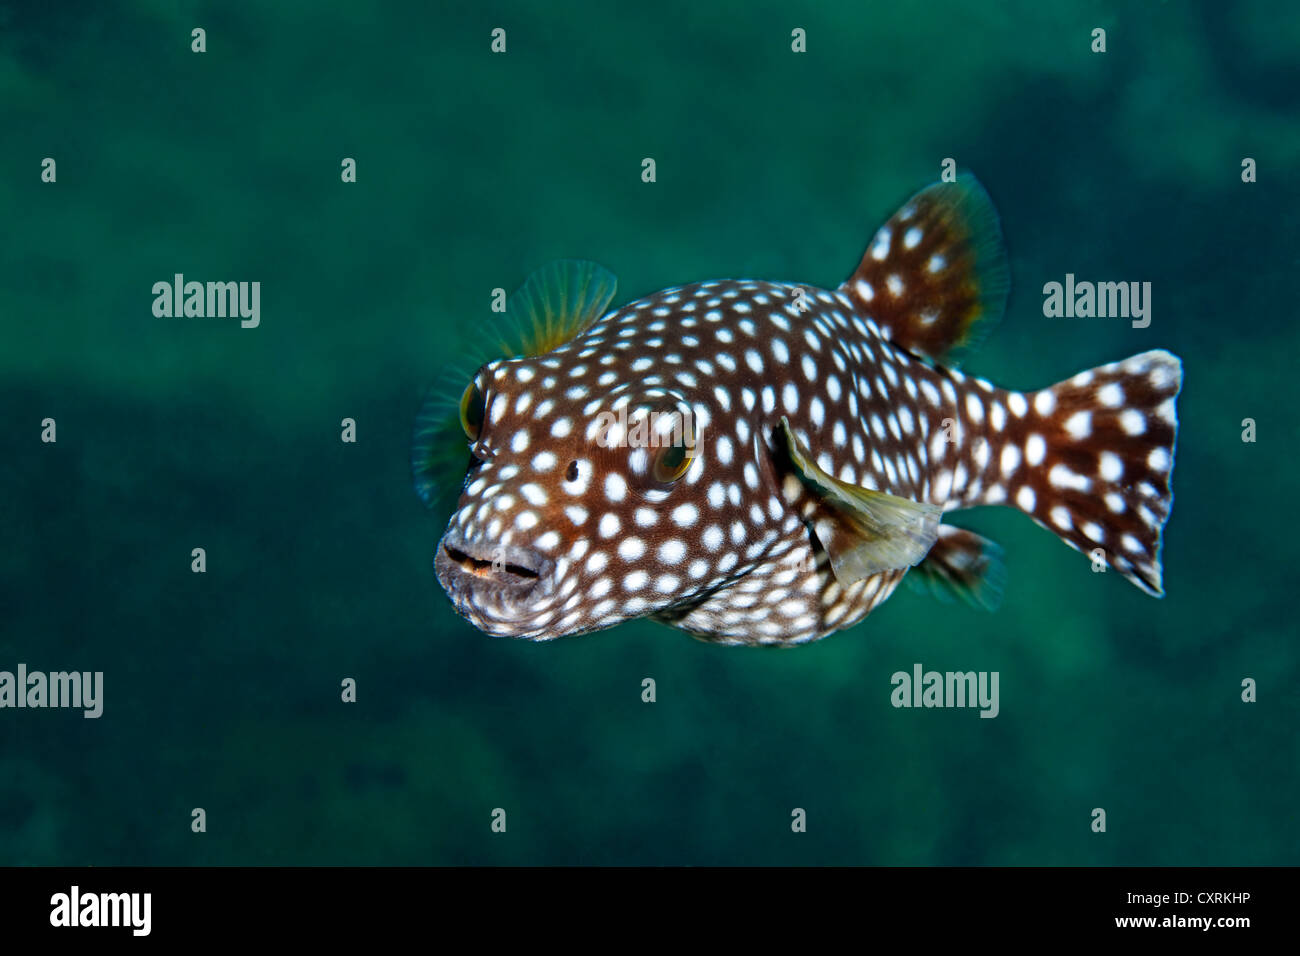 Kugelfisch -Fotos und -Bildmaterial in hoher Auflösung - Seite 2 - Alamy